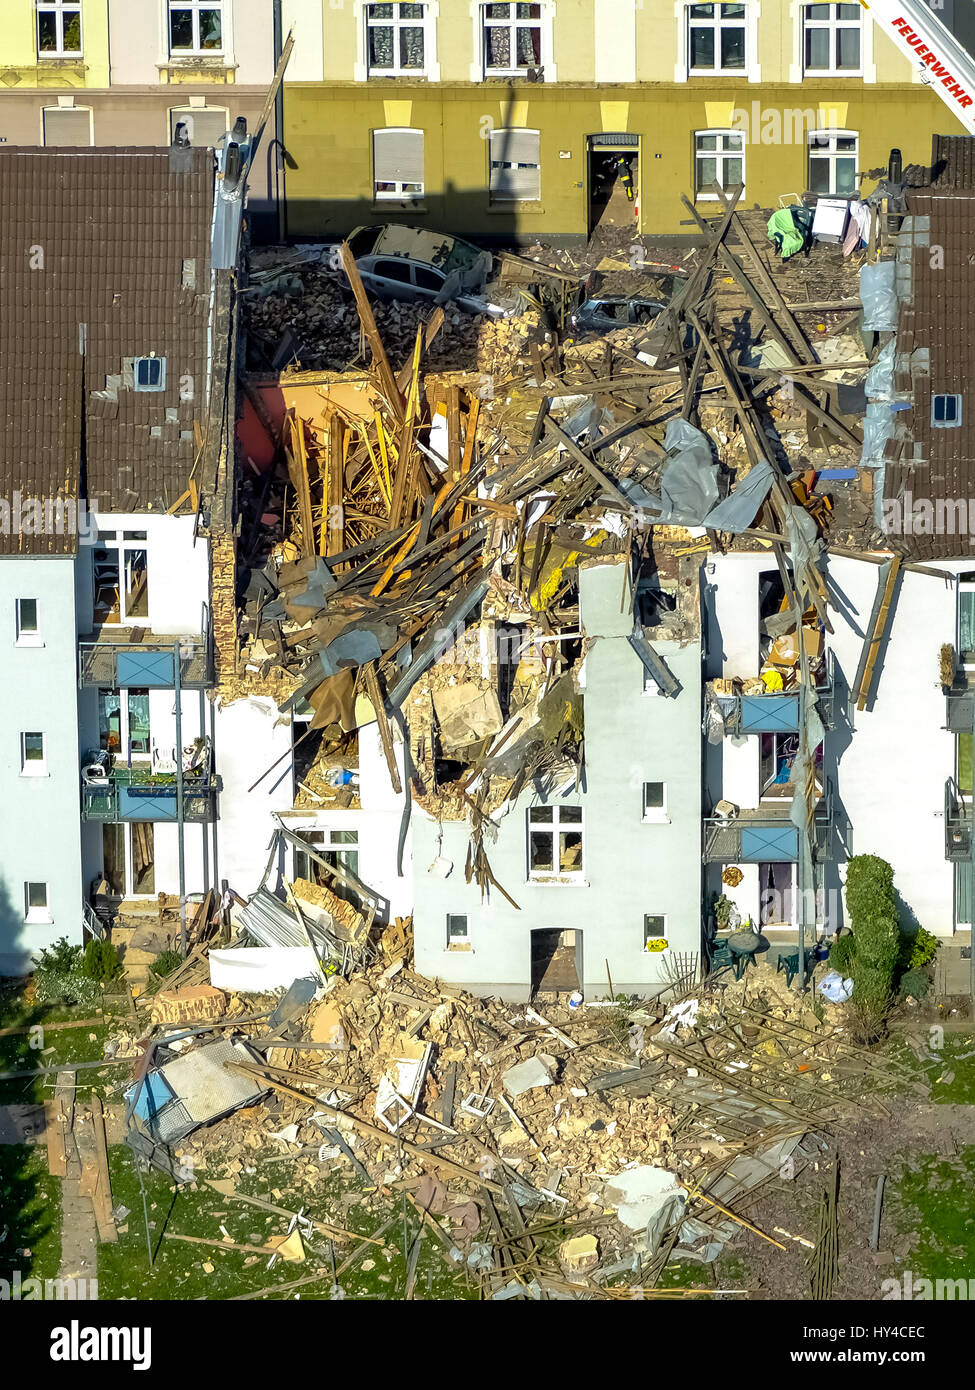 Wohnhaus in Dortmund explodierte, Dortmund - Hörde, Explosion in einem dreistöckigen Wohnhaus, Teutonenstrasse 3, Dortmund, Ruhrgebiet, Stockfoto